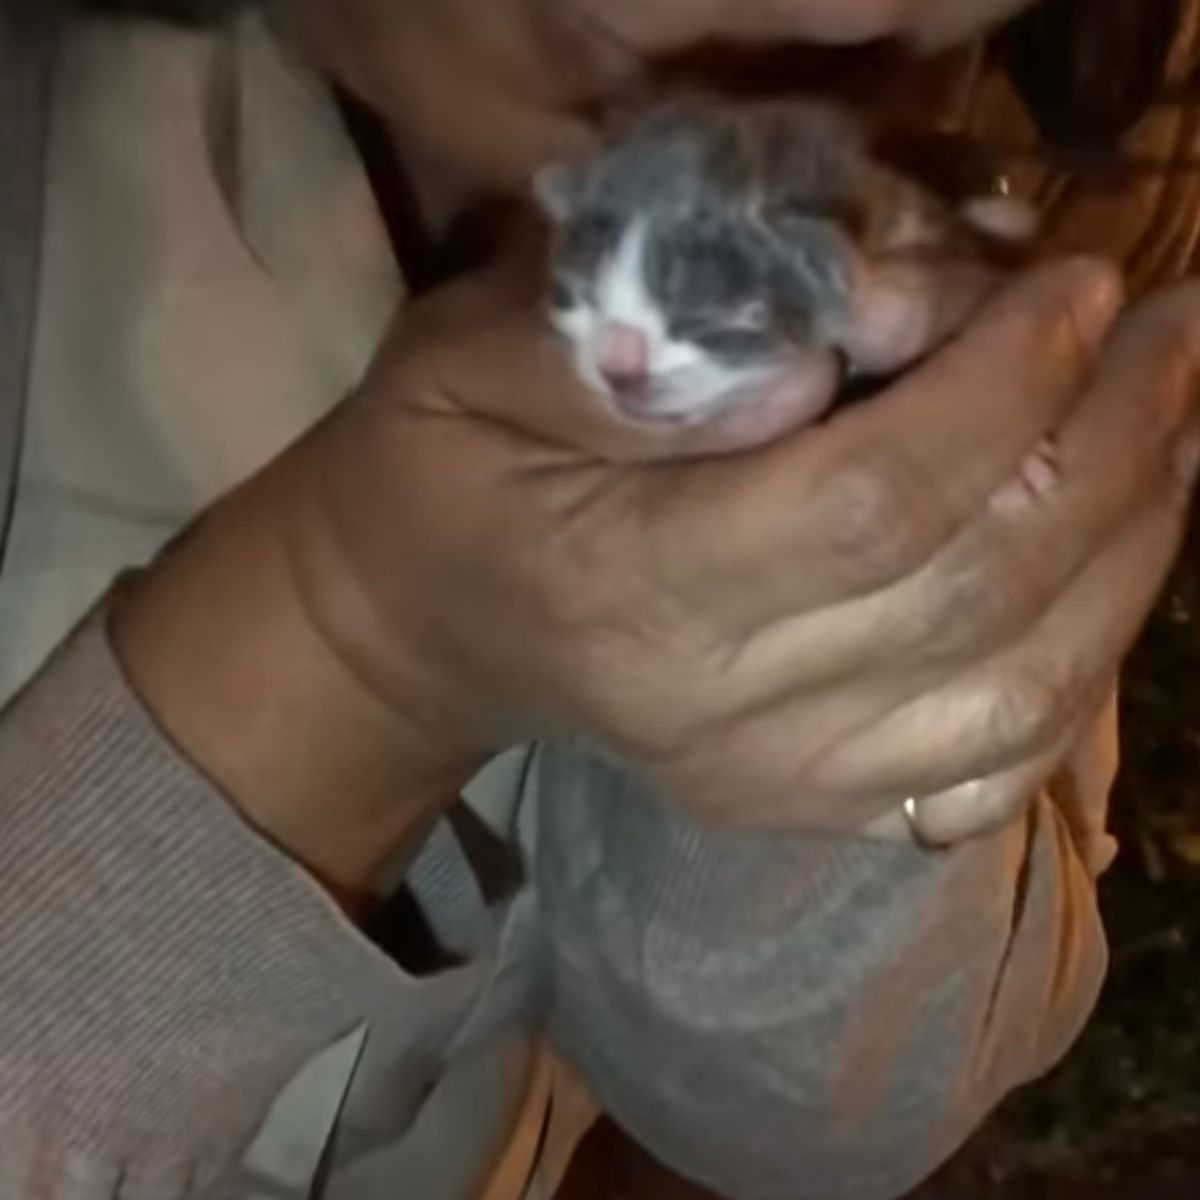 woman holding a newborn kitten